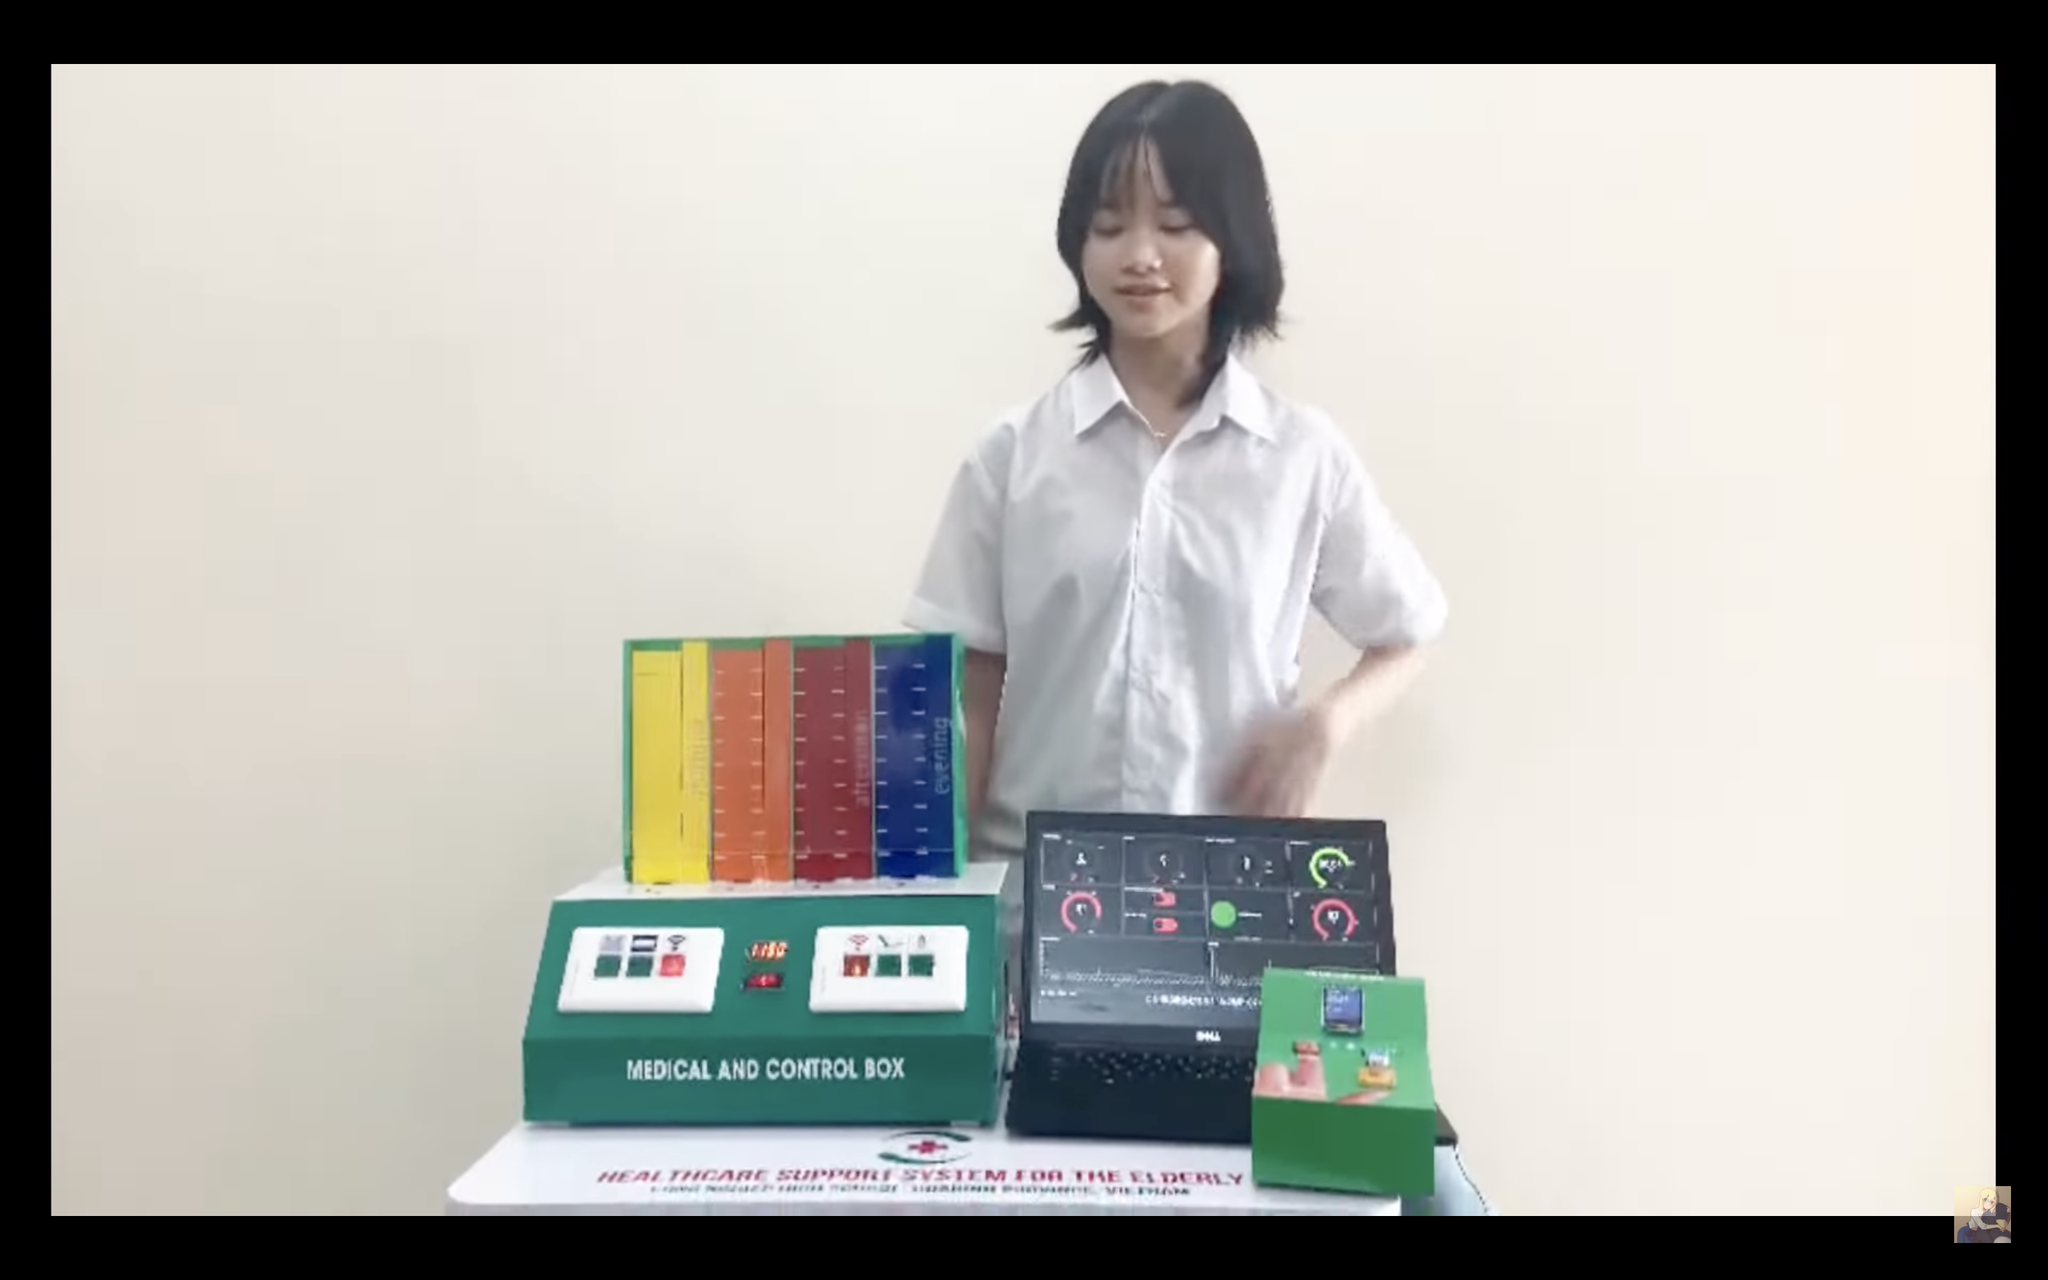 Học sinh Việt lập trình hệ thống phát hiện bệnh cây lúa, thi quốc tế